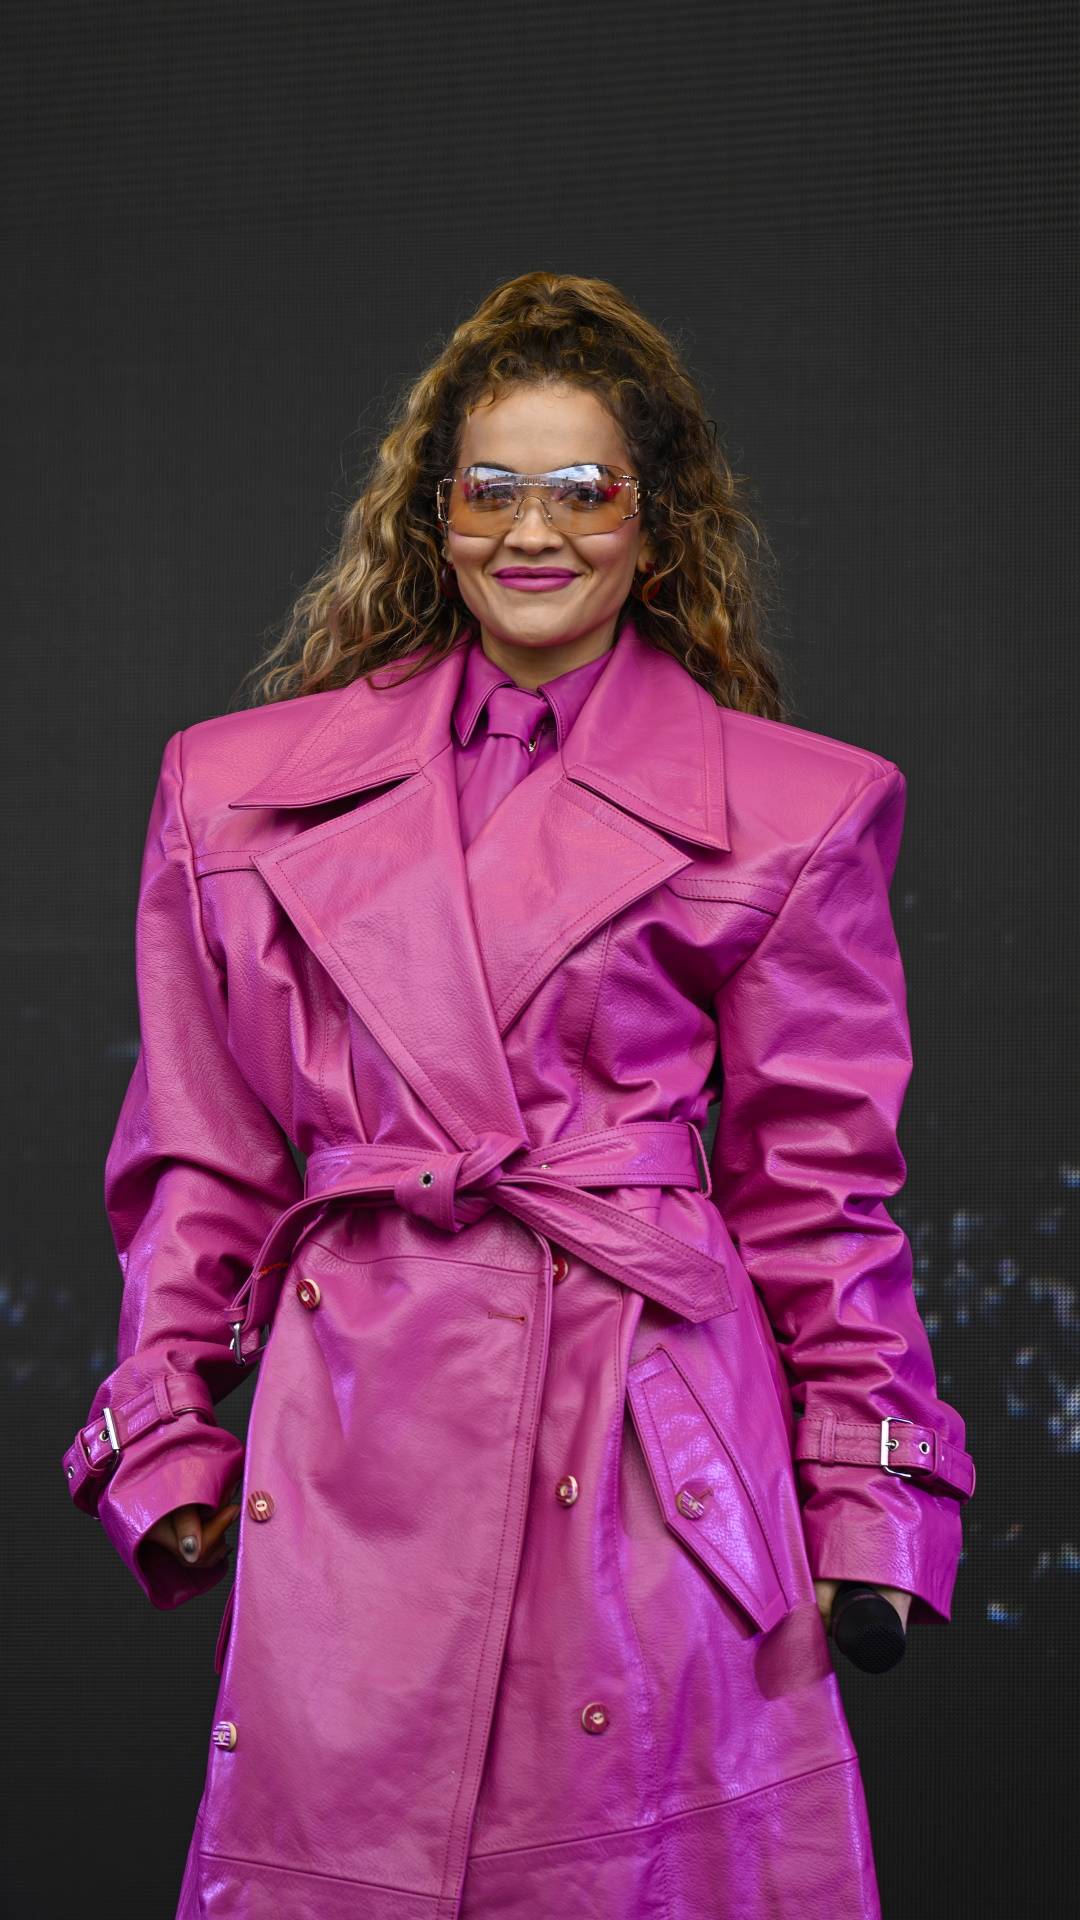 Rita Ora w różowym kombinezonie na festiwalu w Szwecji. Piosenkarka Rita Ora wystąpiła na festiwalu Big Slap w Szwecji w różowej stylizacji godnej filmowej „Barbie”: fuksjowym kombinezonie, butach i okularach.